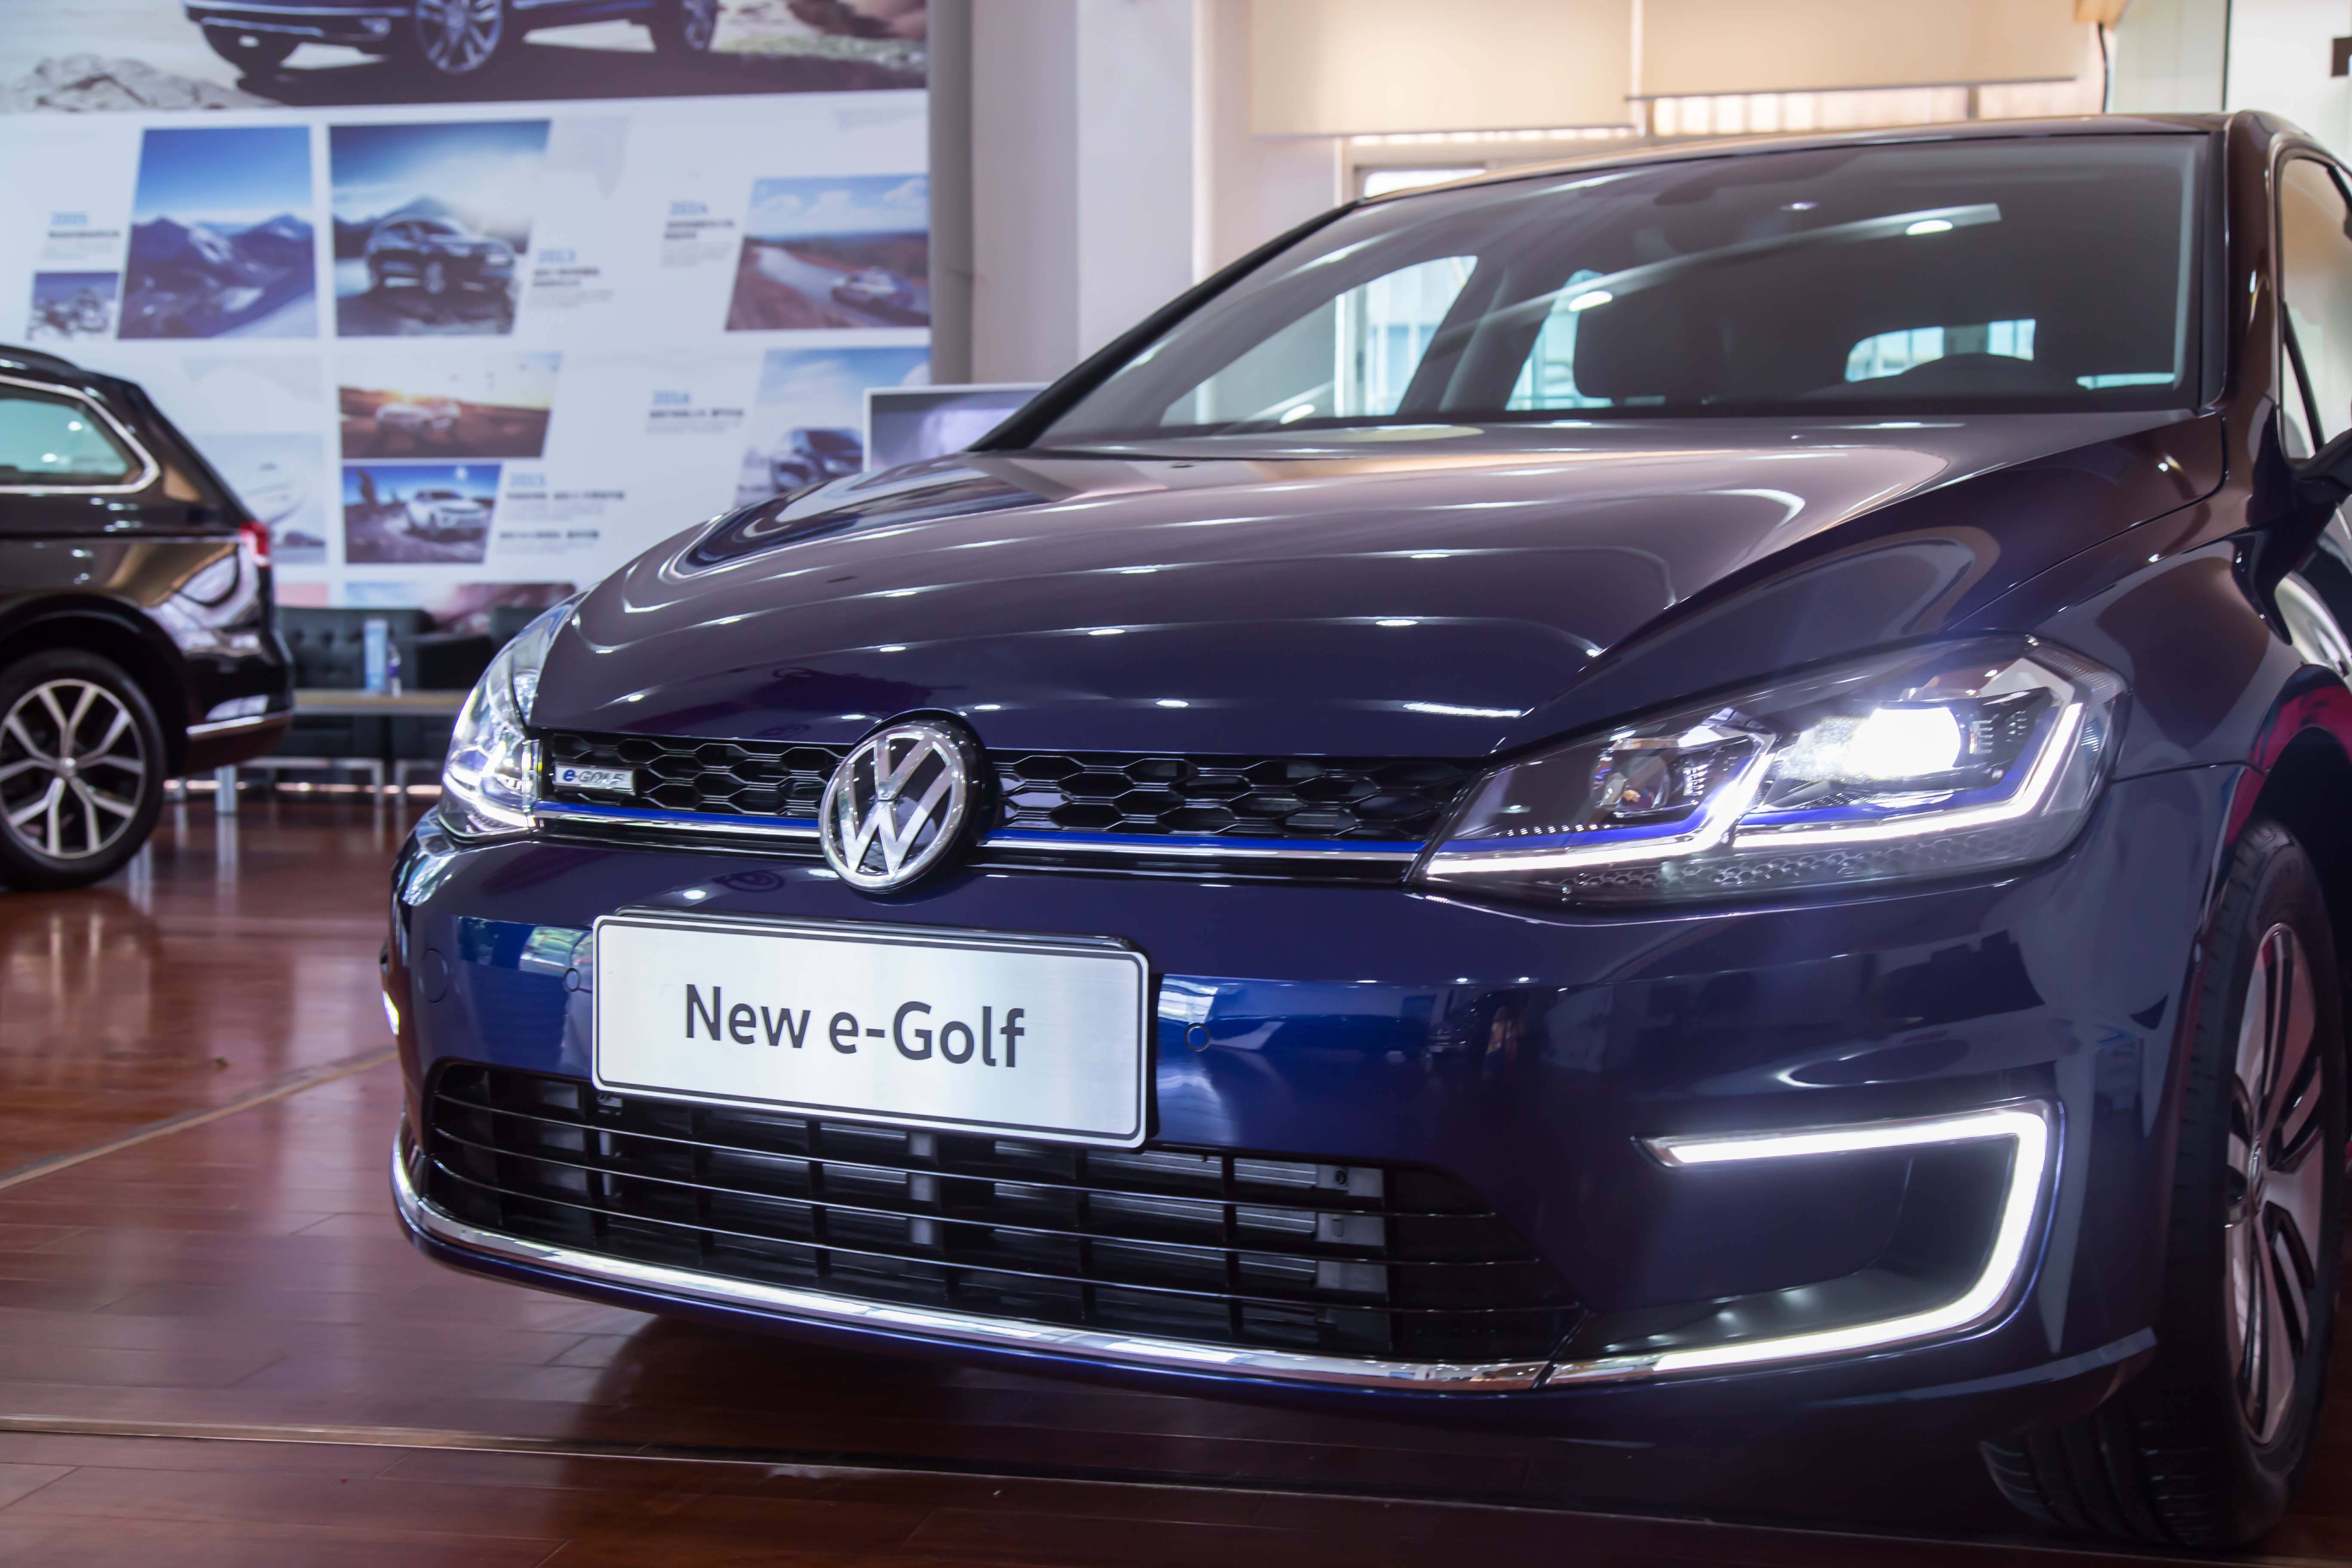 电动高尔夫新车北京报价8万，是不是抄底好时机？